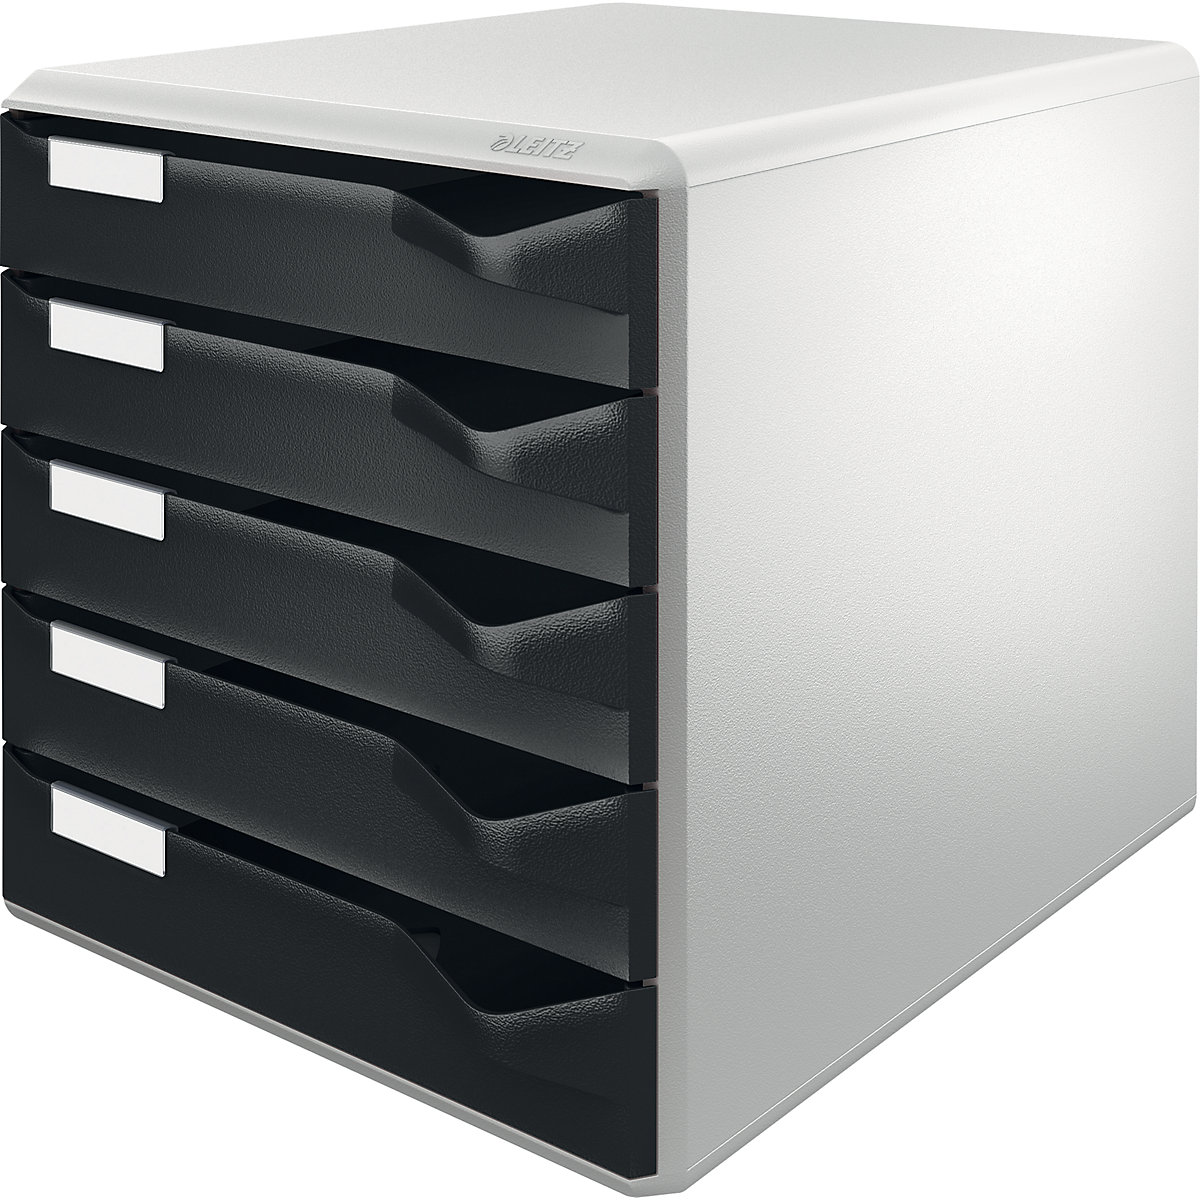 Leitz – Bloc-tiroirs, kit de rangement pour courrier et formulaires, coloris bâti gris, coloris tiroirs noir, 5 tiroirs